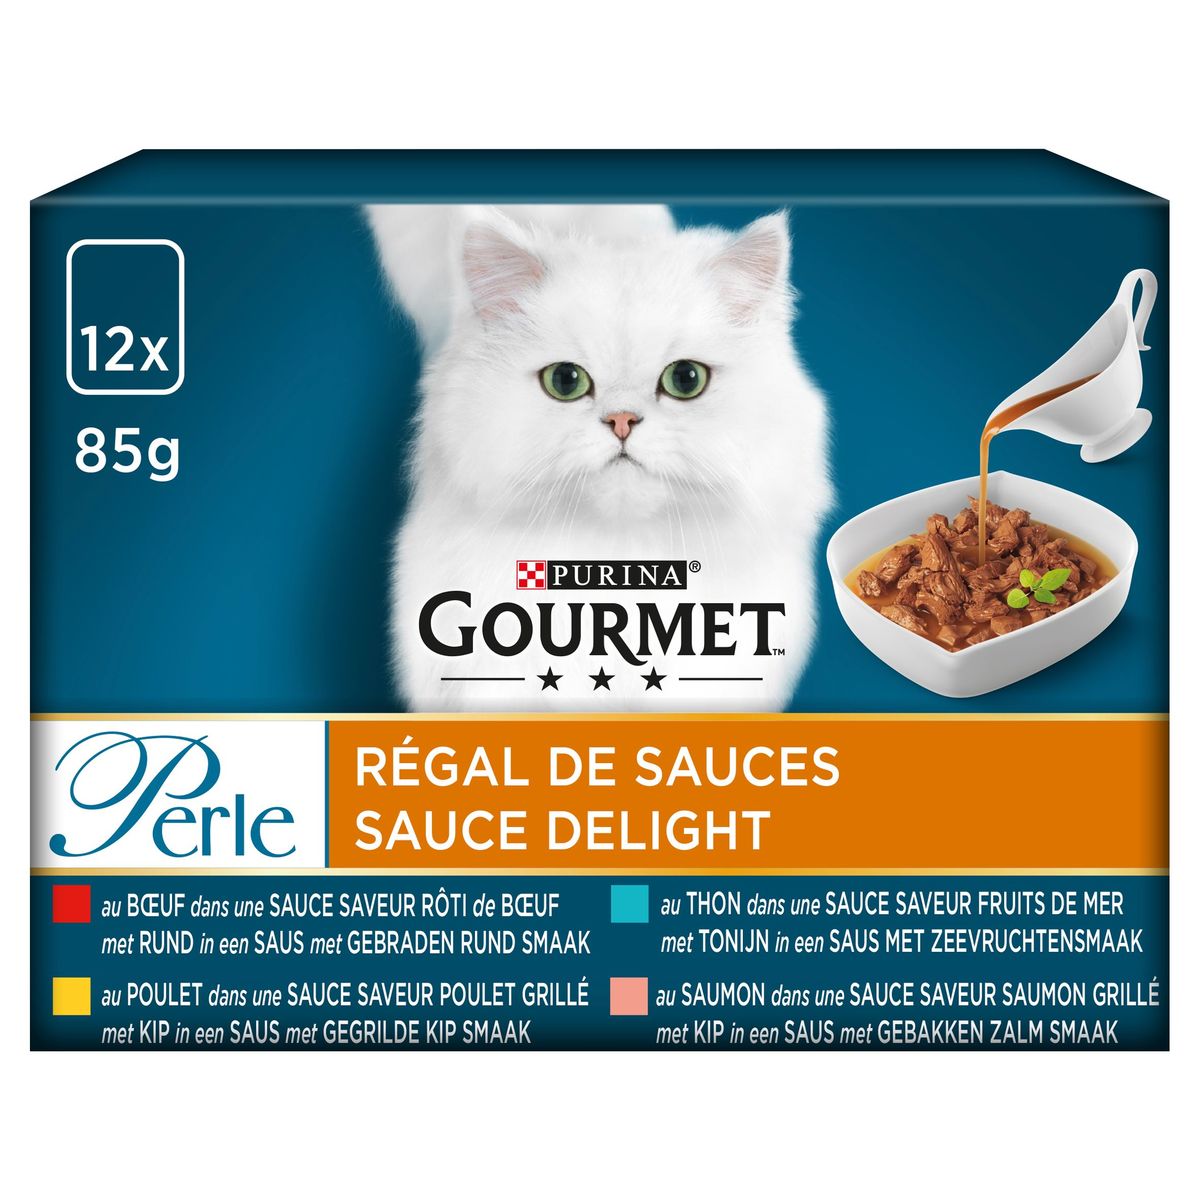 Gourmet Perle Régal de Sauces Boeuf, Poulet, Thon et Saumon  12x85g